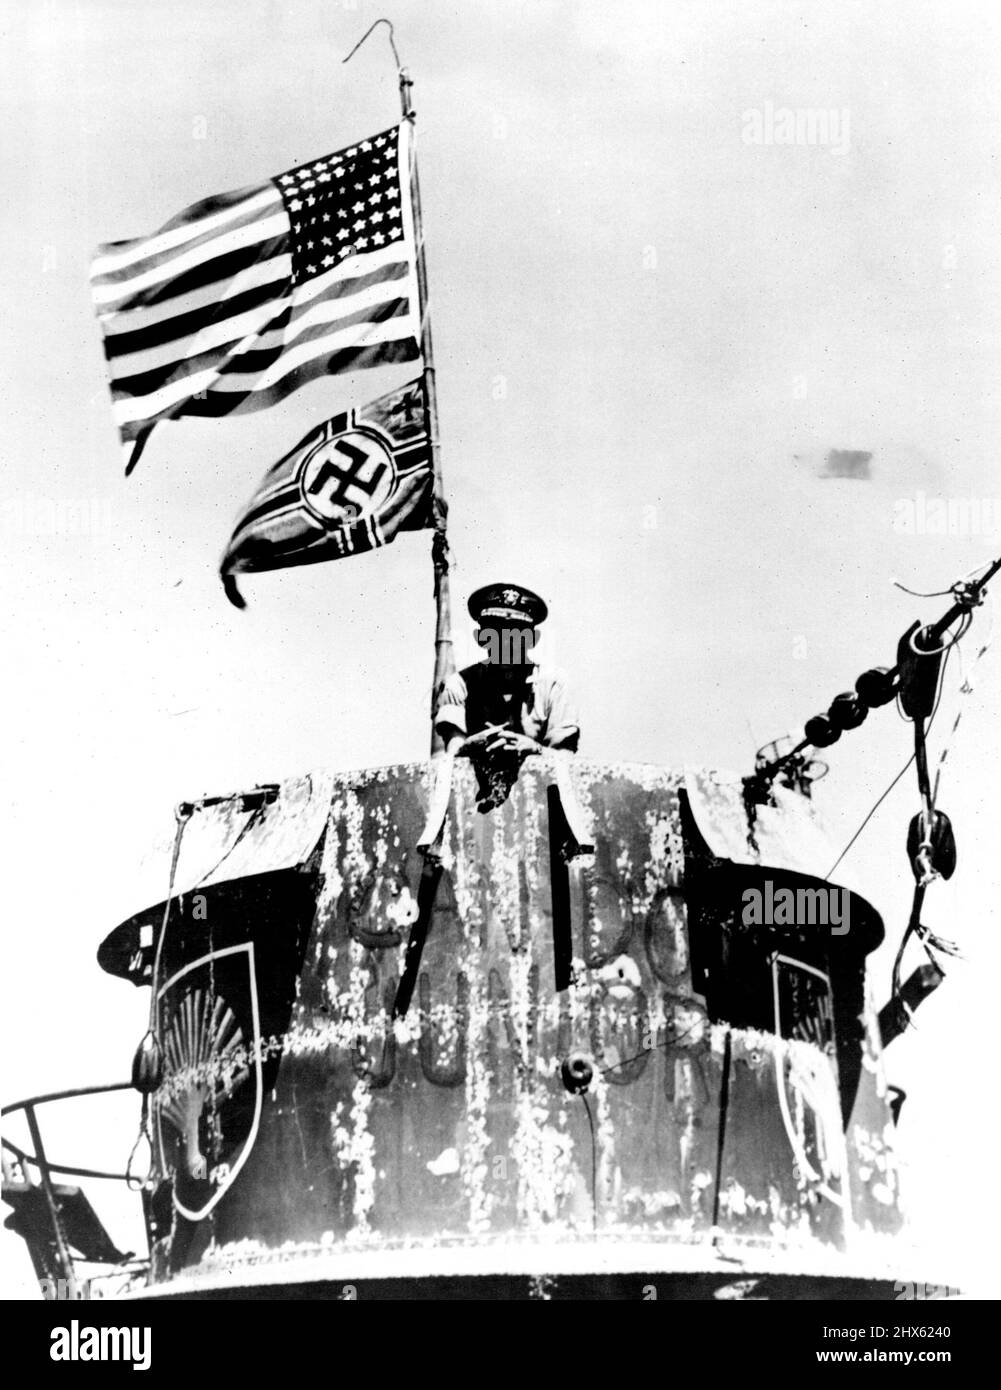 US Navy Schiffe vor Westafrika - Captain Daniel V. Gallery, Kommandant der US-Arbeitsgruppe, die die U-505 eroberte, wird auf dem Turm des deutschen Unterseebades fotografiert. Entsprechend dem Marineanbau fliegen die US-Farben über dem Nazi-Emblem, das die Nationalität des gefangenen Schiffes bezeichnet. 22. Juni 1945. (Foto vom US Office of war Information Picture).;U.S. Marine Schiffe vor Westafrika - Kapitän Daniel V. Gallery, Kommandant der US-Arbeitsgruppe, die die U-505 erobert hat, ist Ph Stockfoto